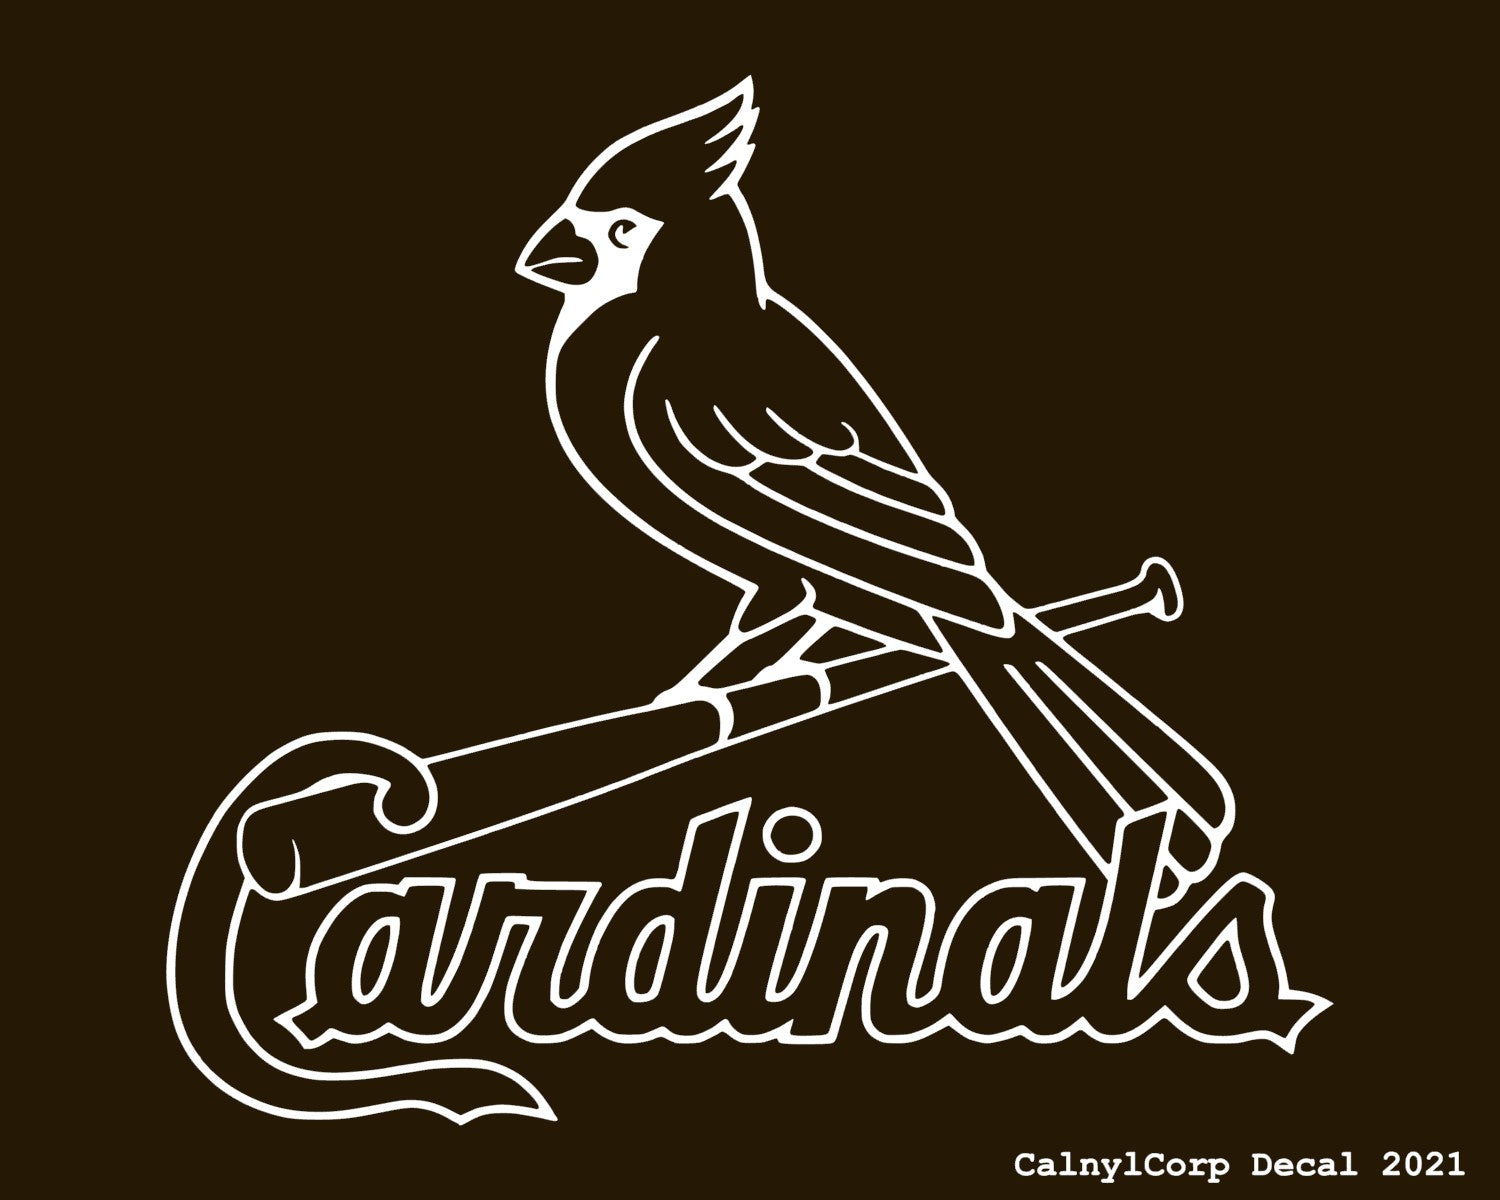 Saint Louis Cardinals sticker